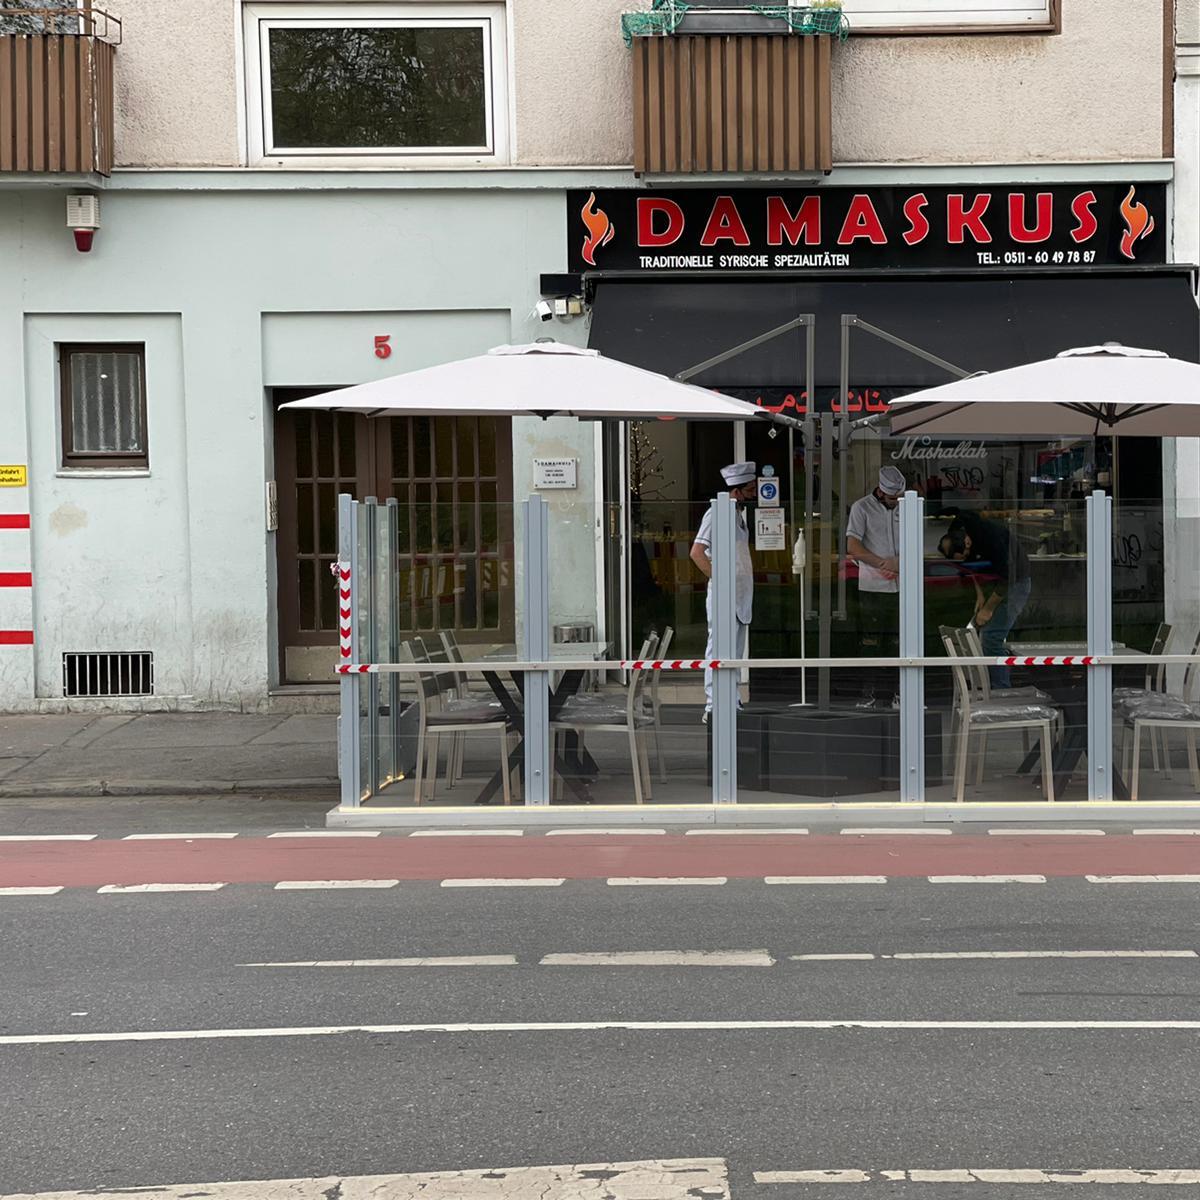 Restaurant "Damaskus Traditionelle Syrische Spezialitäten" in Hannover